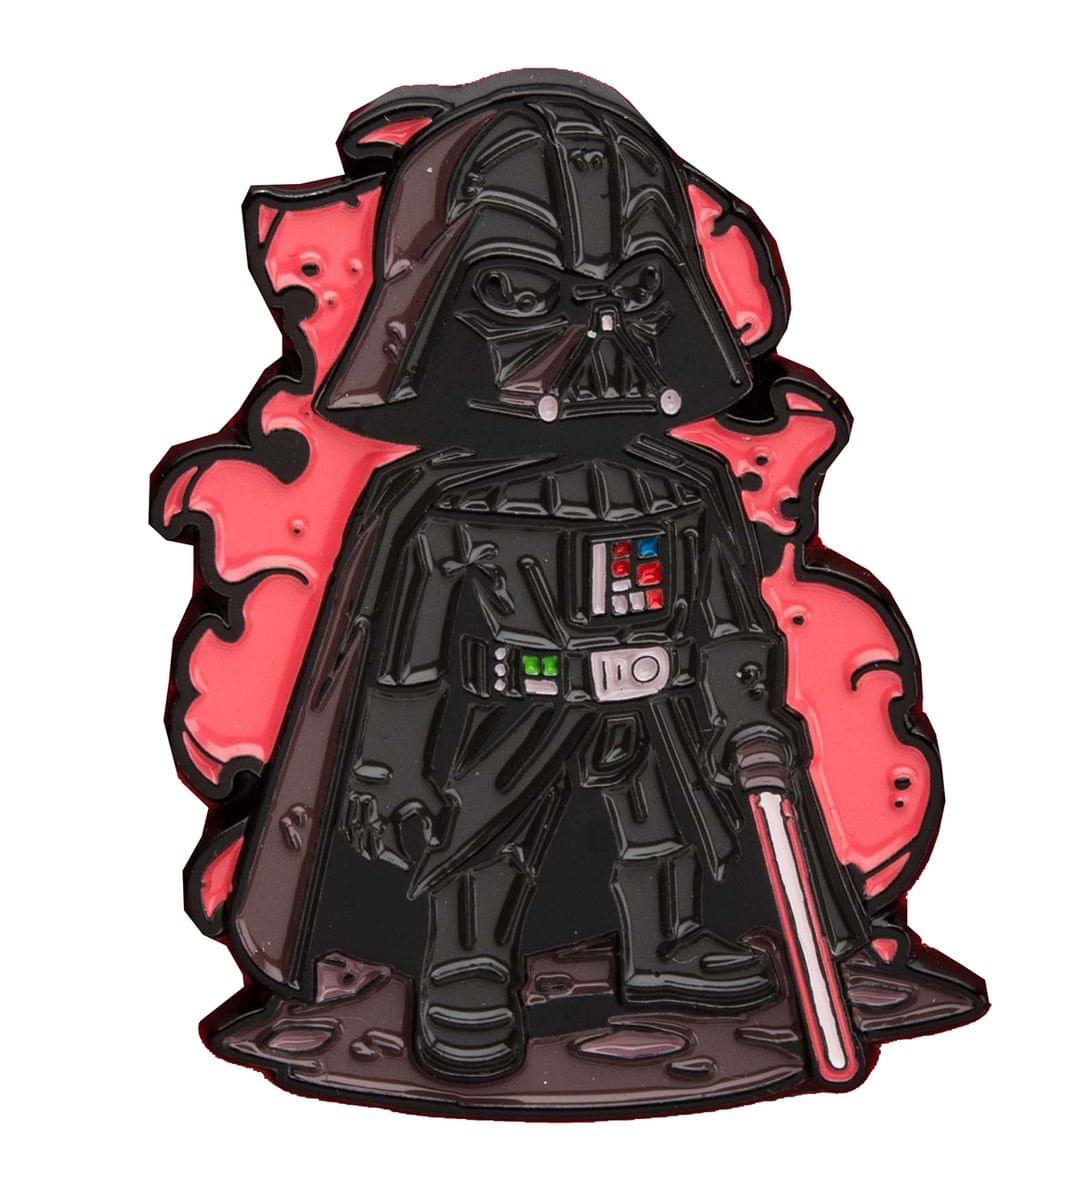 OFFICIAL Star Wars Darth Vader Pin | Exclusive Art Design By Derek Laufman